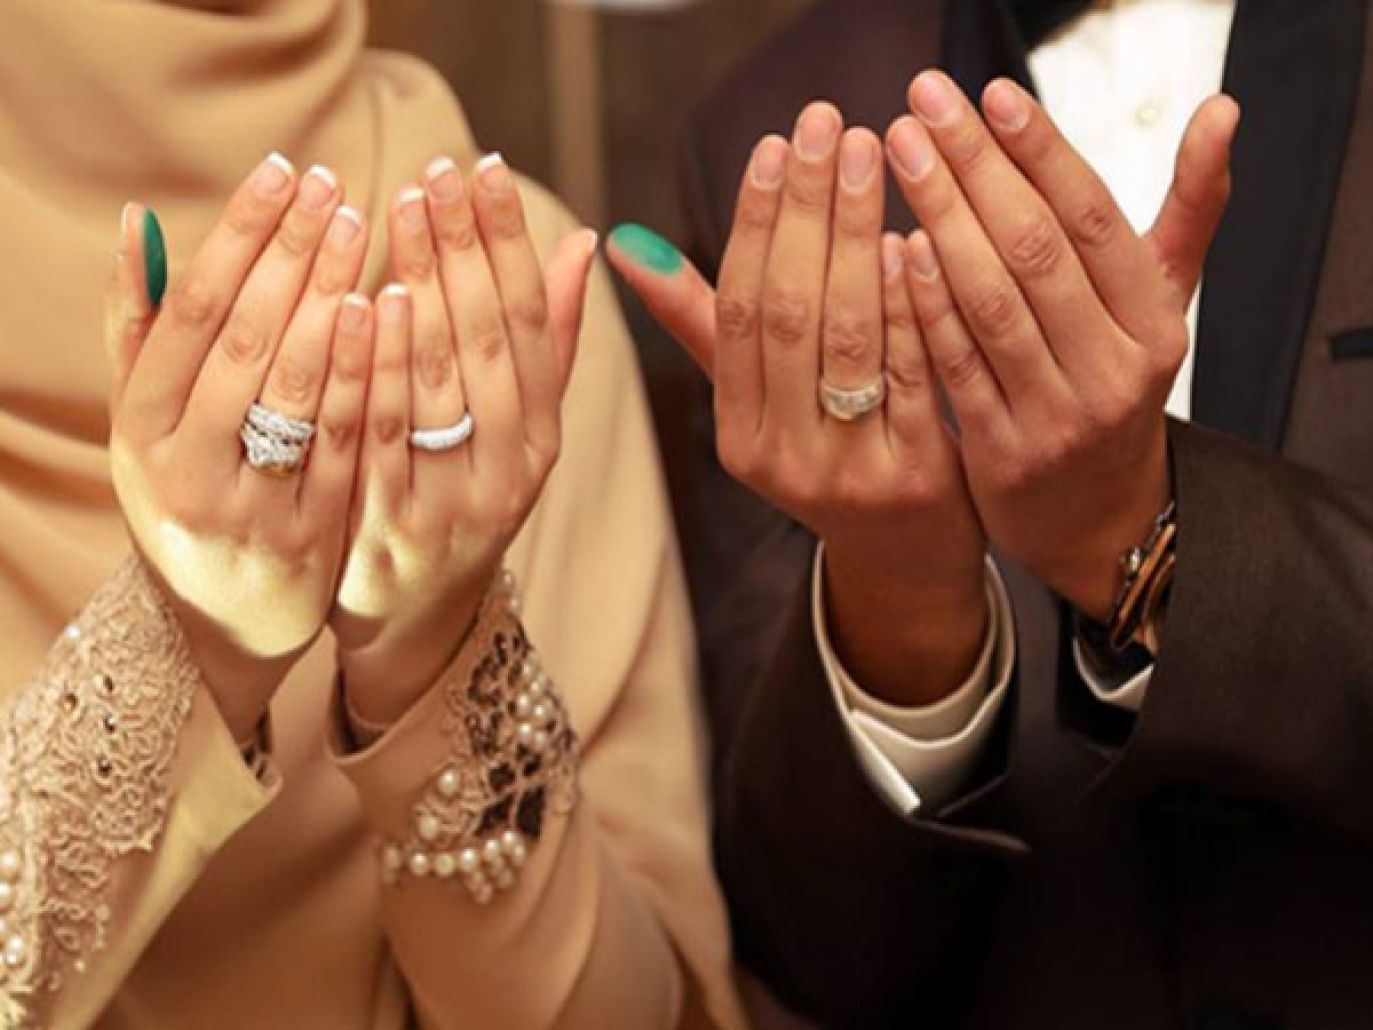 يقين: زواج الفاتحة منتشر بين مغاربة العالم والنساء يعانين نفسيا جرّاءه